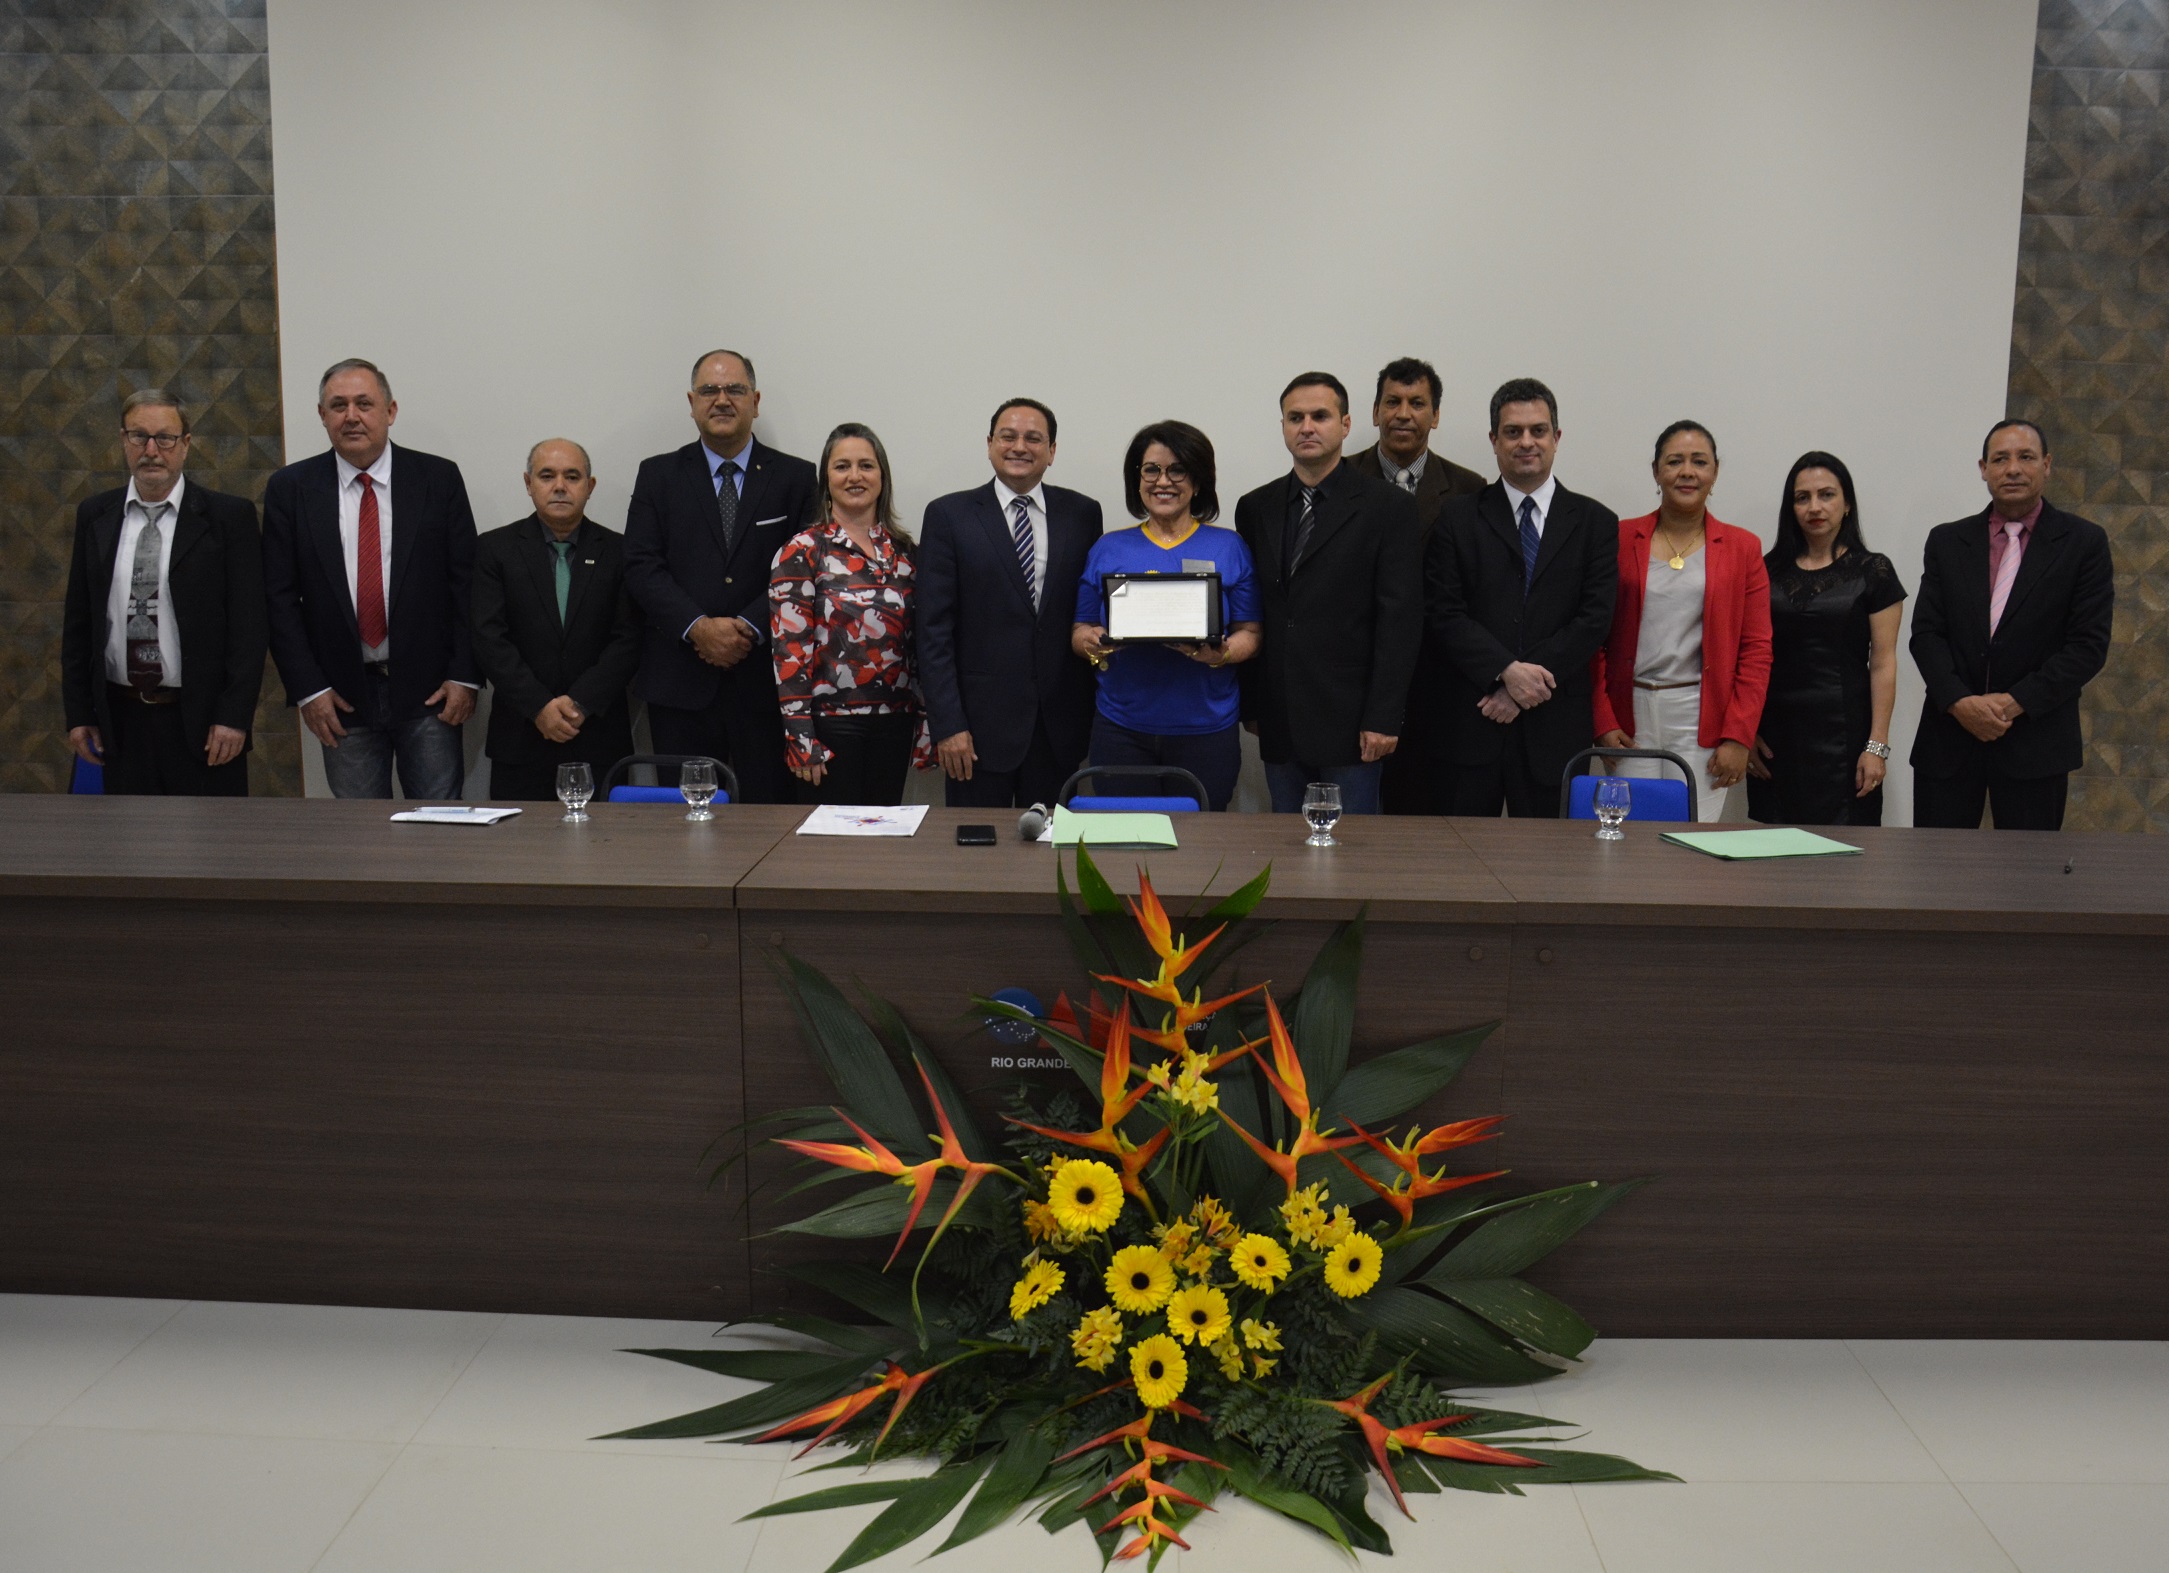 Câmara celebra 80 anos do Rotary Club Cachoeira do Sul com sessão solene